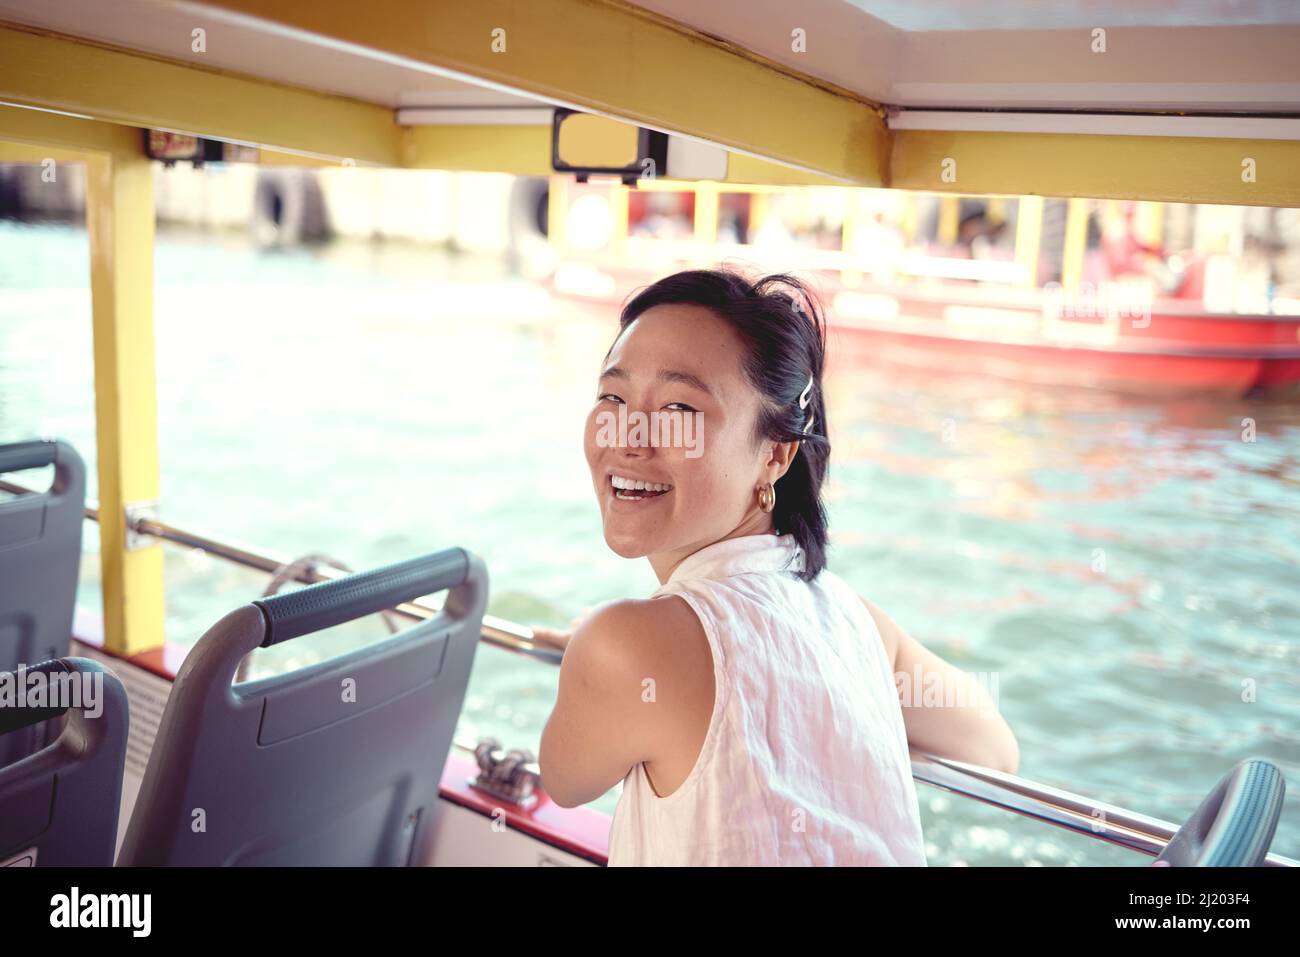 Es ist der perfekte Tag für eine Bootsfahrt. Ein Porträt einer attraktiven jungen Frau, die tagsüber auf einer Fähre die Stadt allein erkundet. Stockfoto